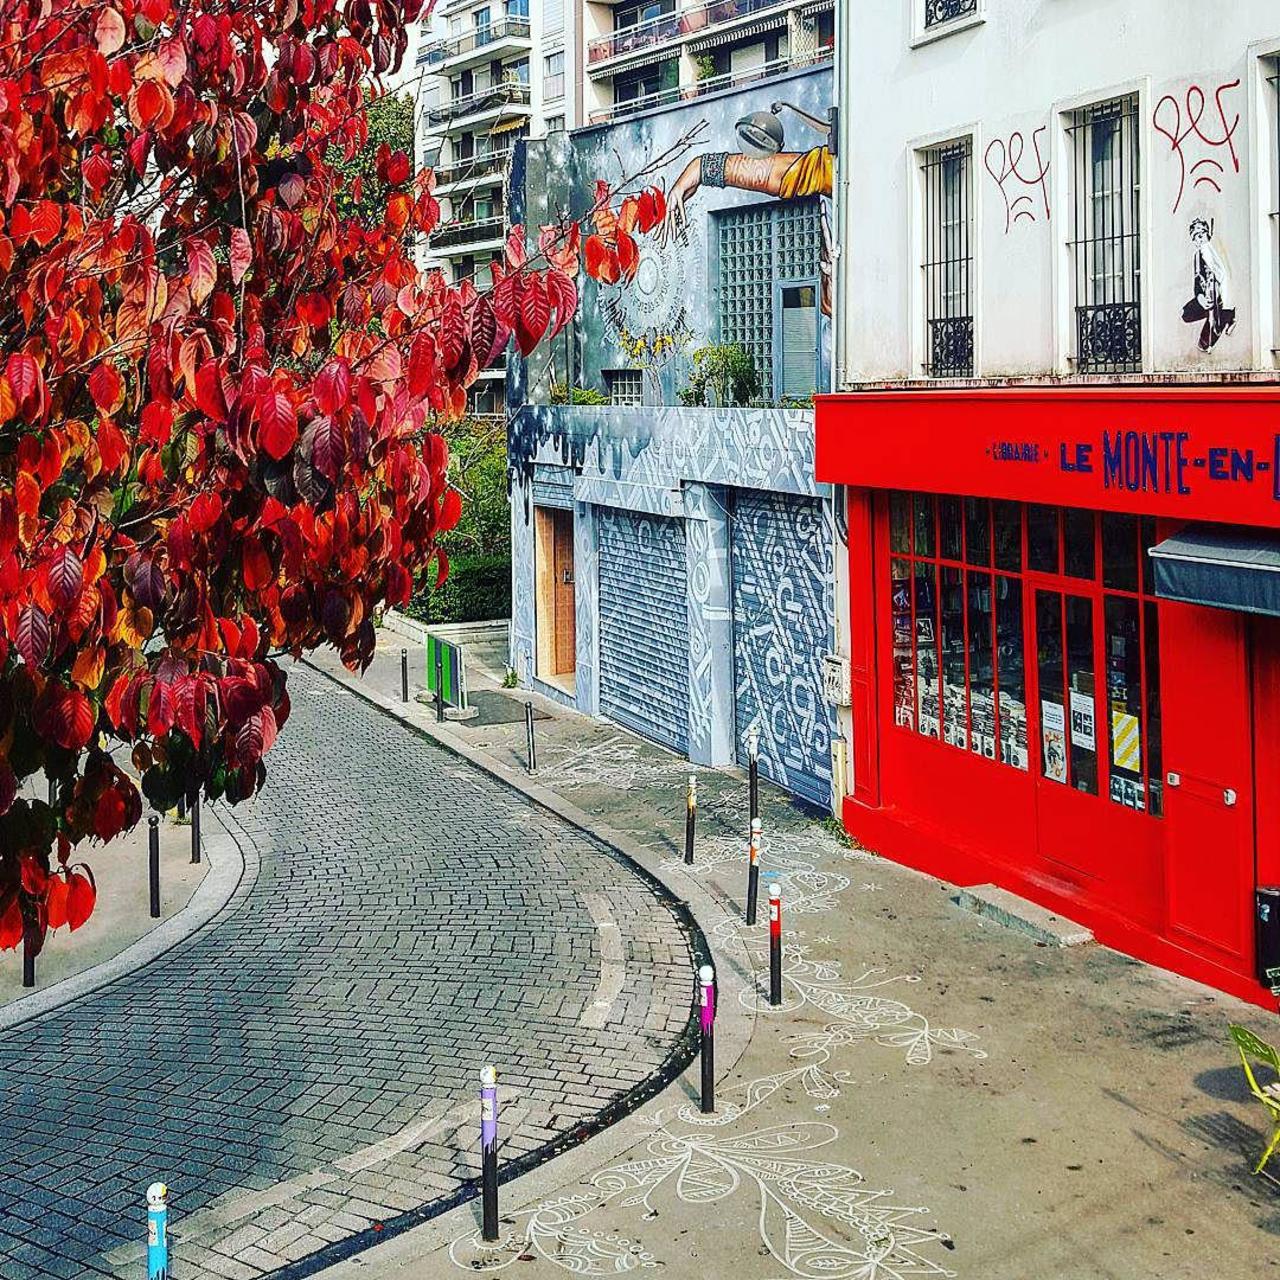 circumjacent_fr: #Paris #graffiti photo by beabookingstories http://ift.tt/1MvzaF8 #StreetArt http://t.co/pam6bDKy7R